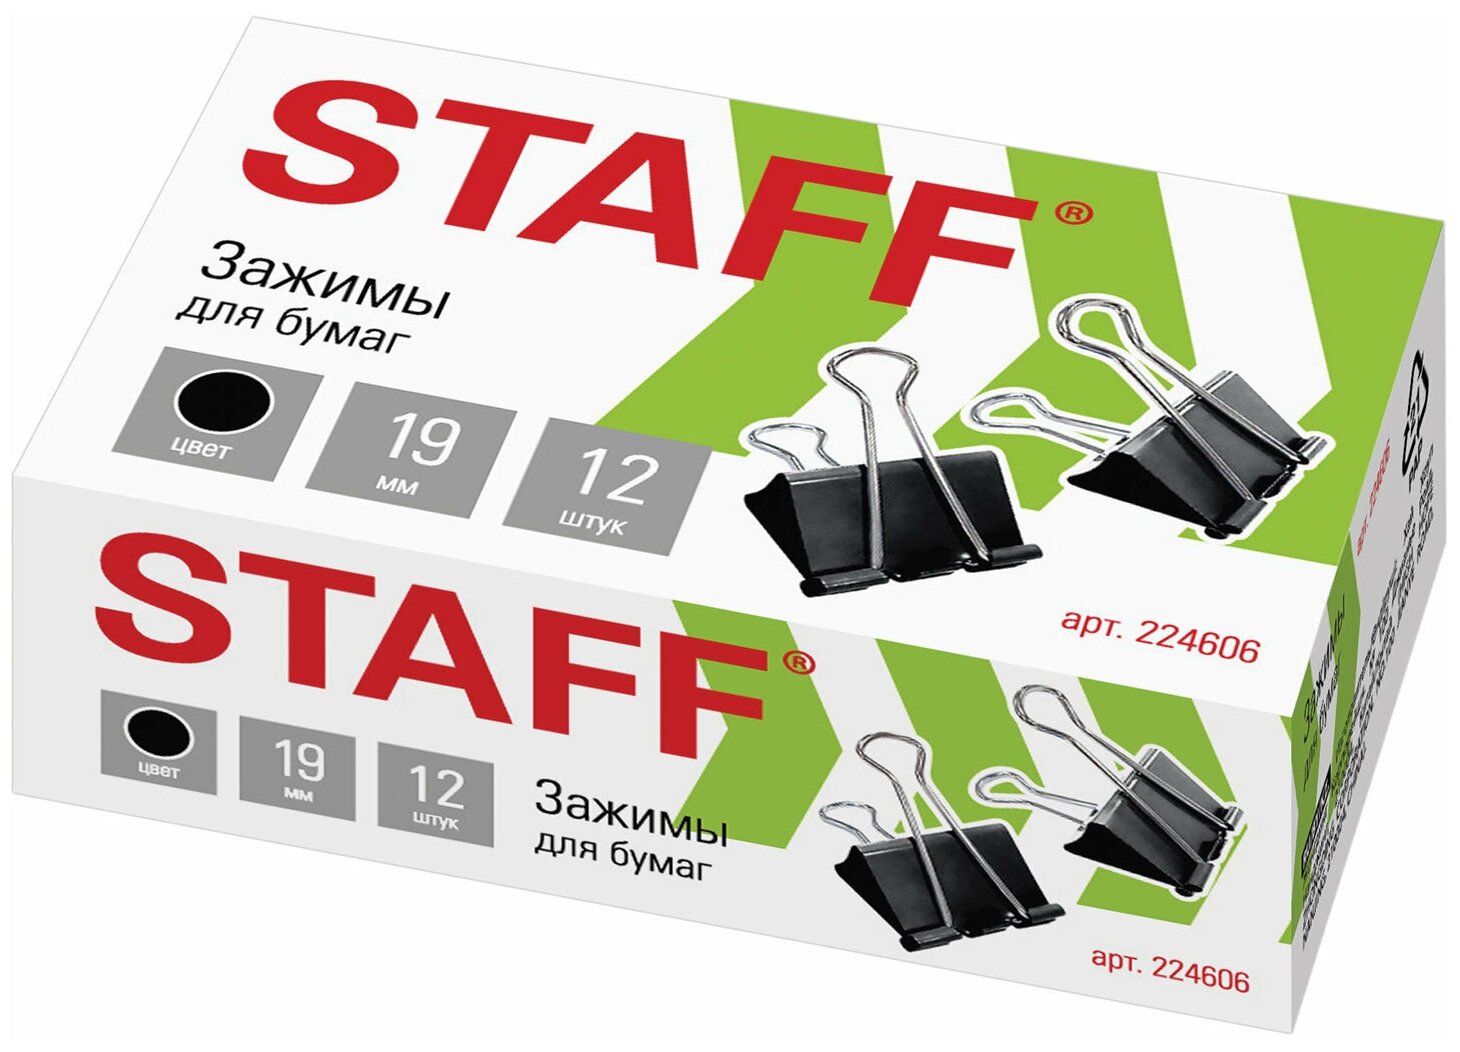 Зажимы для бумаг STAFF "EVERYDAY", комплект 12 шт, 19 мм, на 60 листов, черные, картонная коробка, 224606